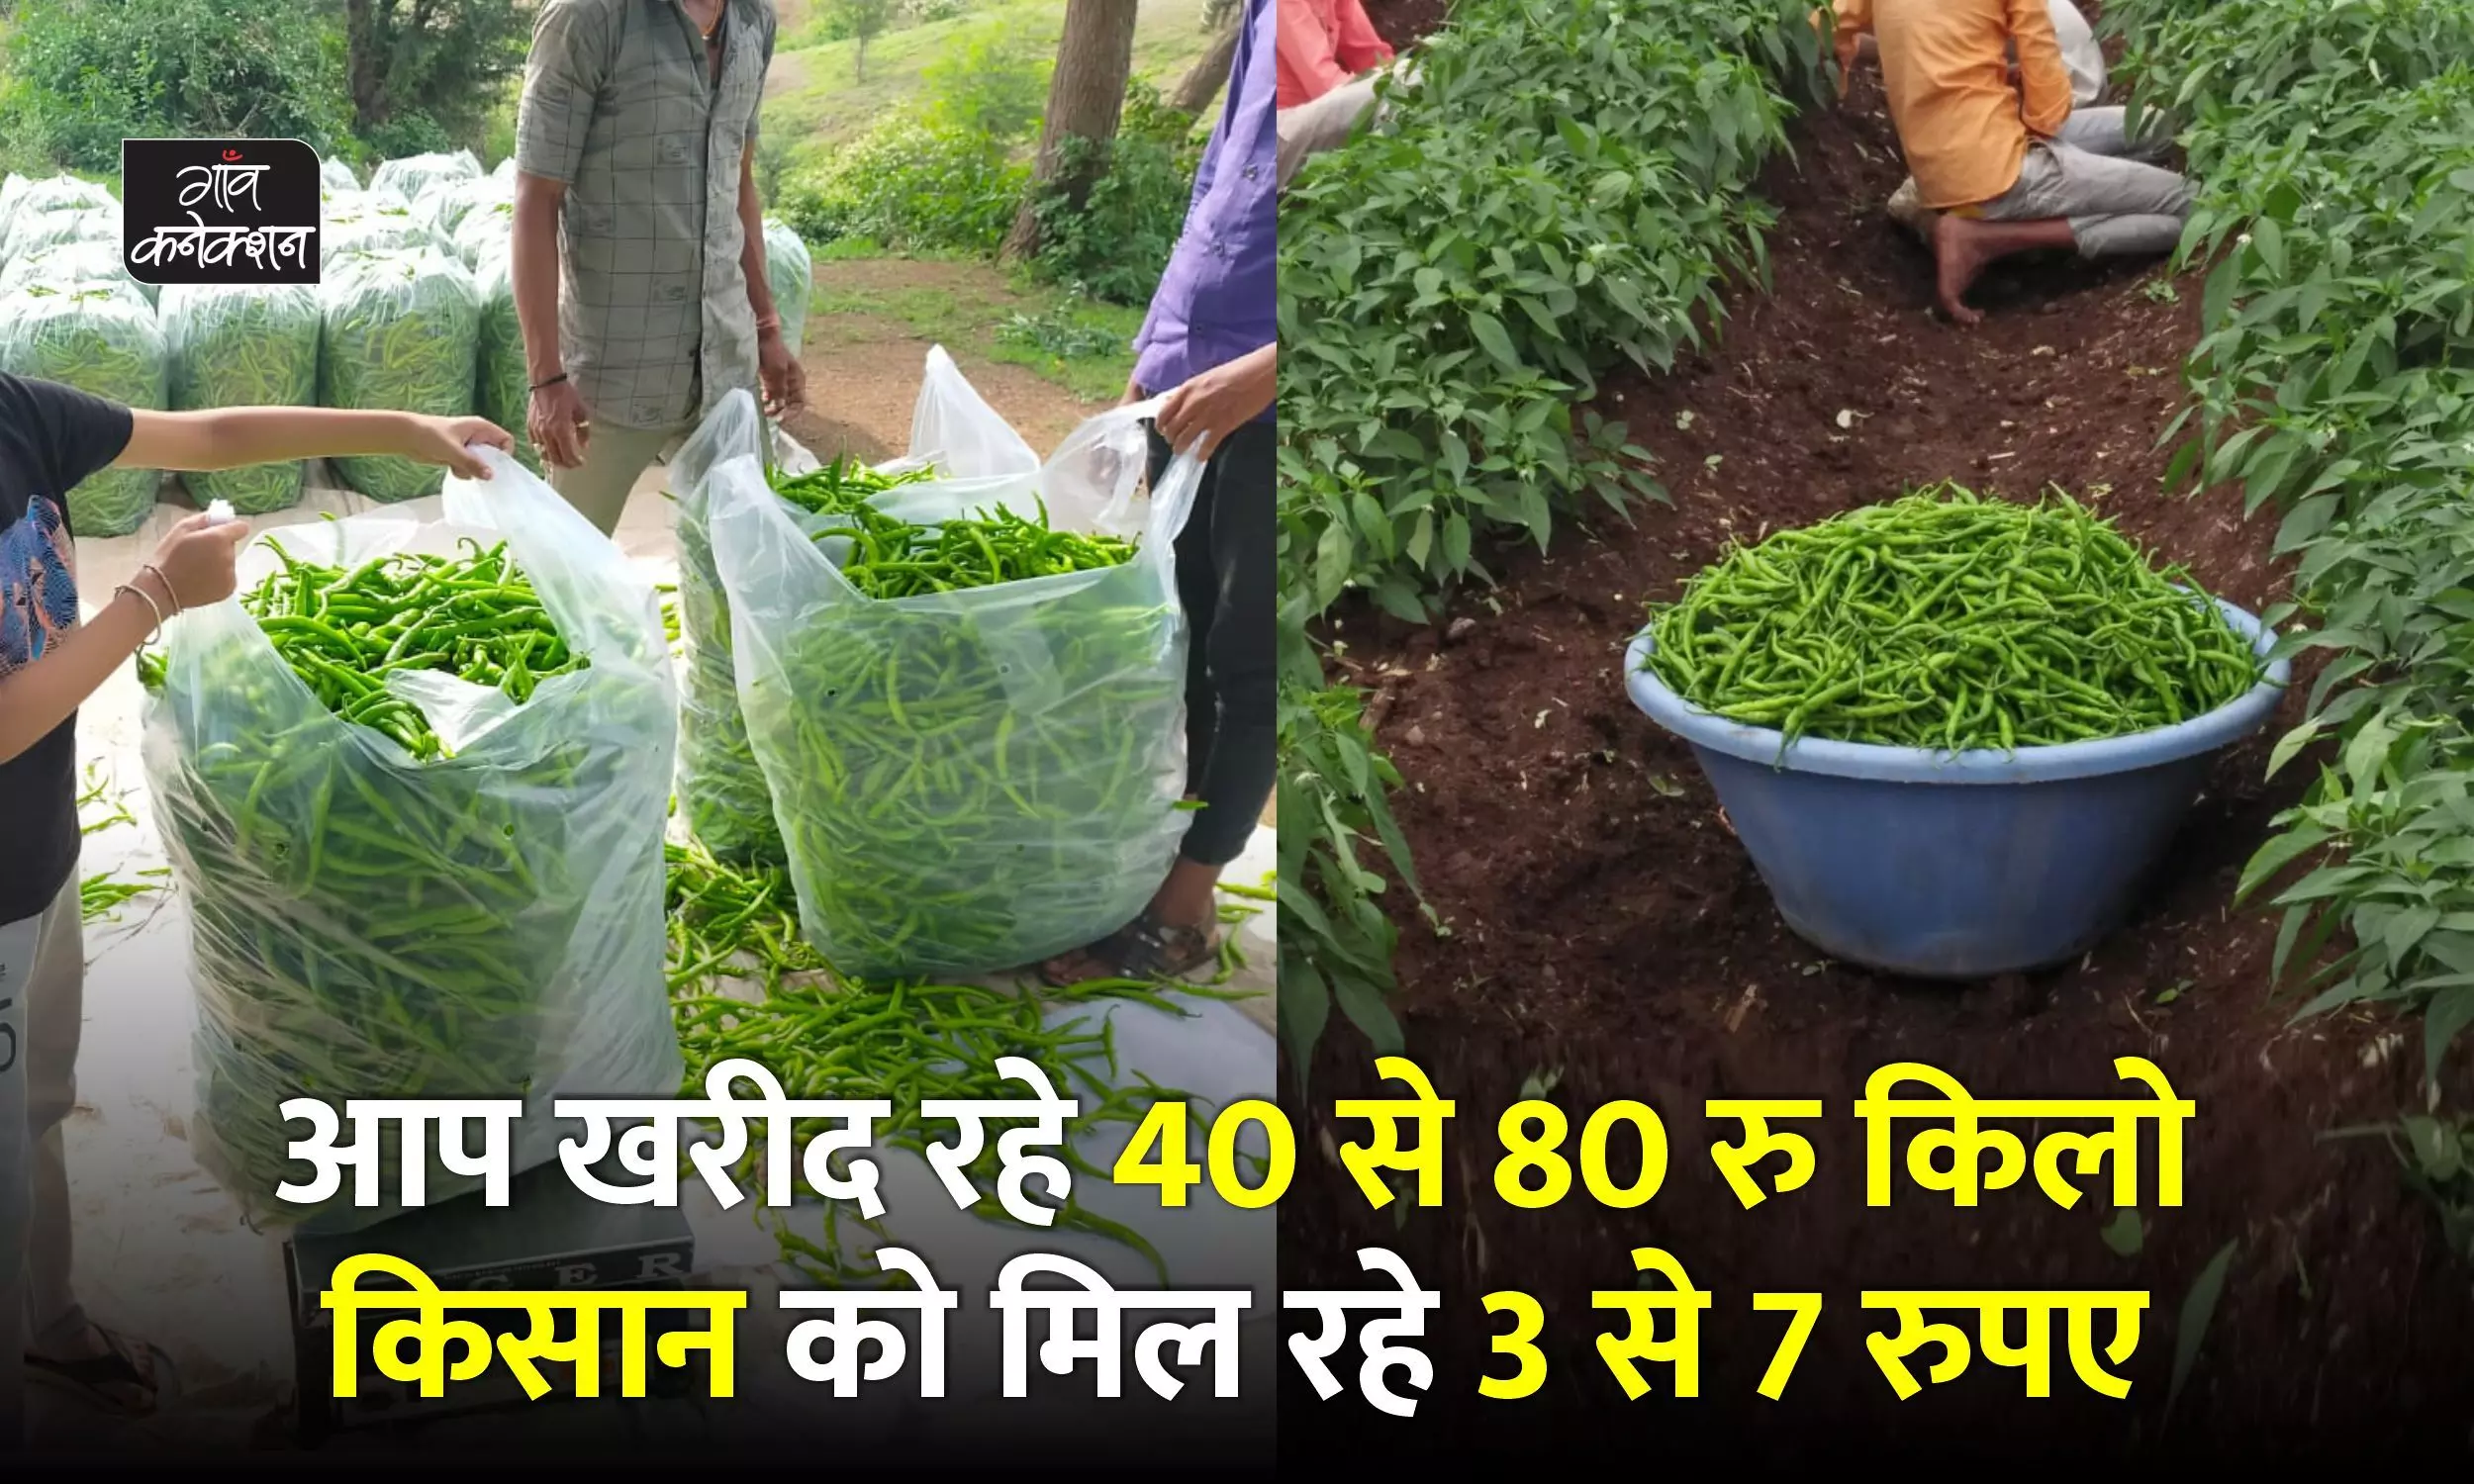 हरी मिर्च का काला बाजार: खाने वाले खरीद रहे 40-80 रुपए किलो, थोक भाव 15-20 रुपए, किसान को मिल रहे 3-7 रुपए